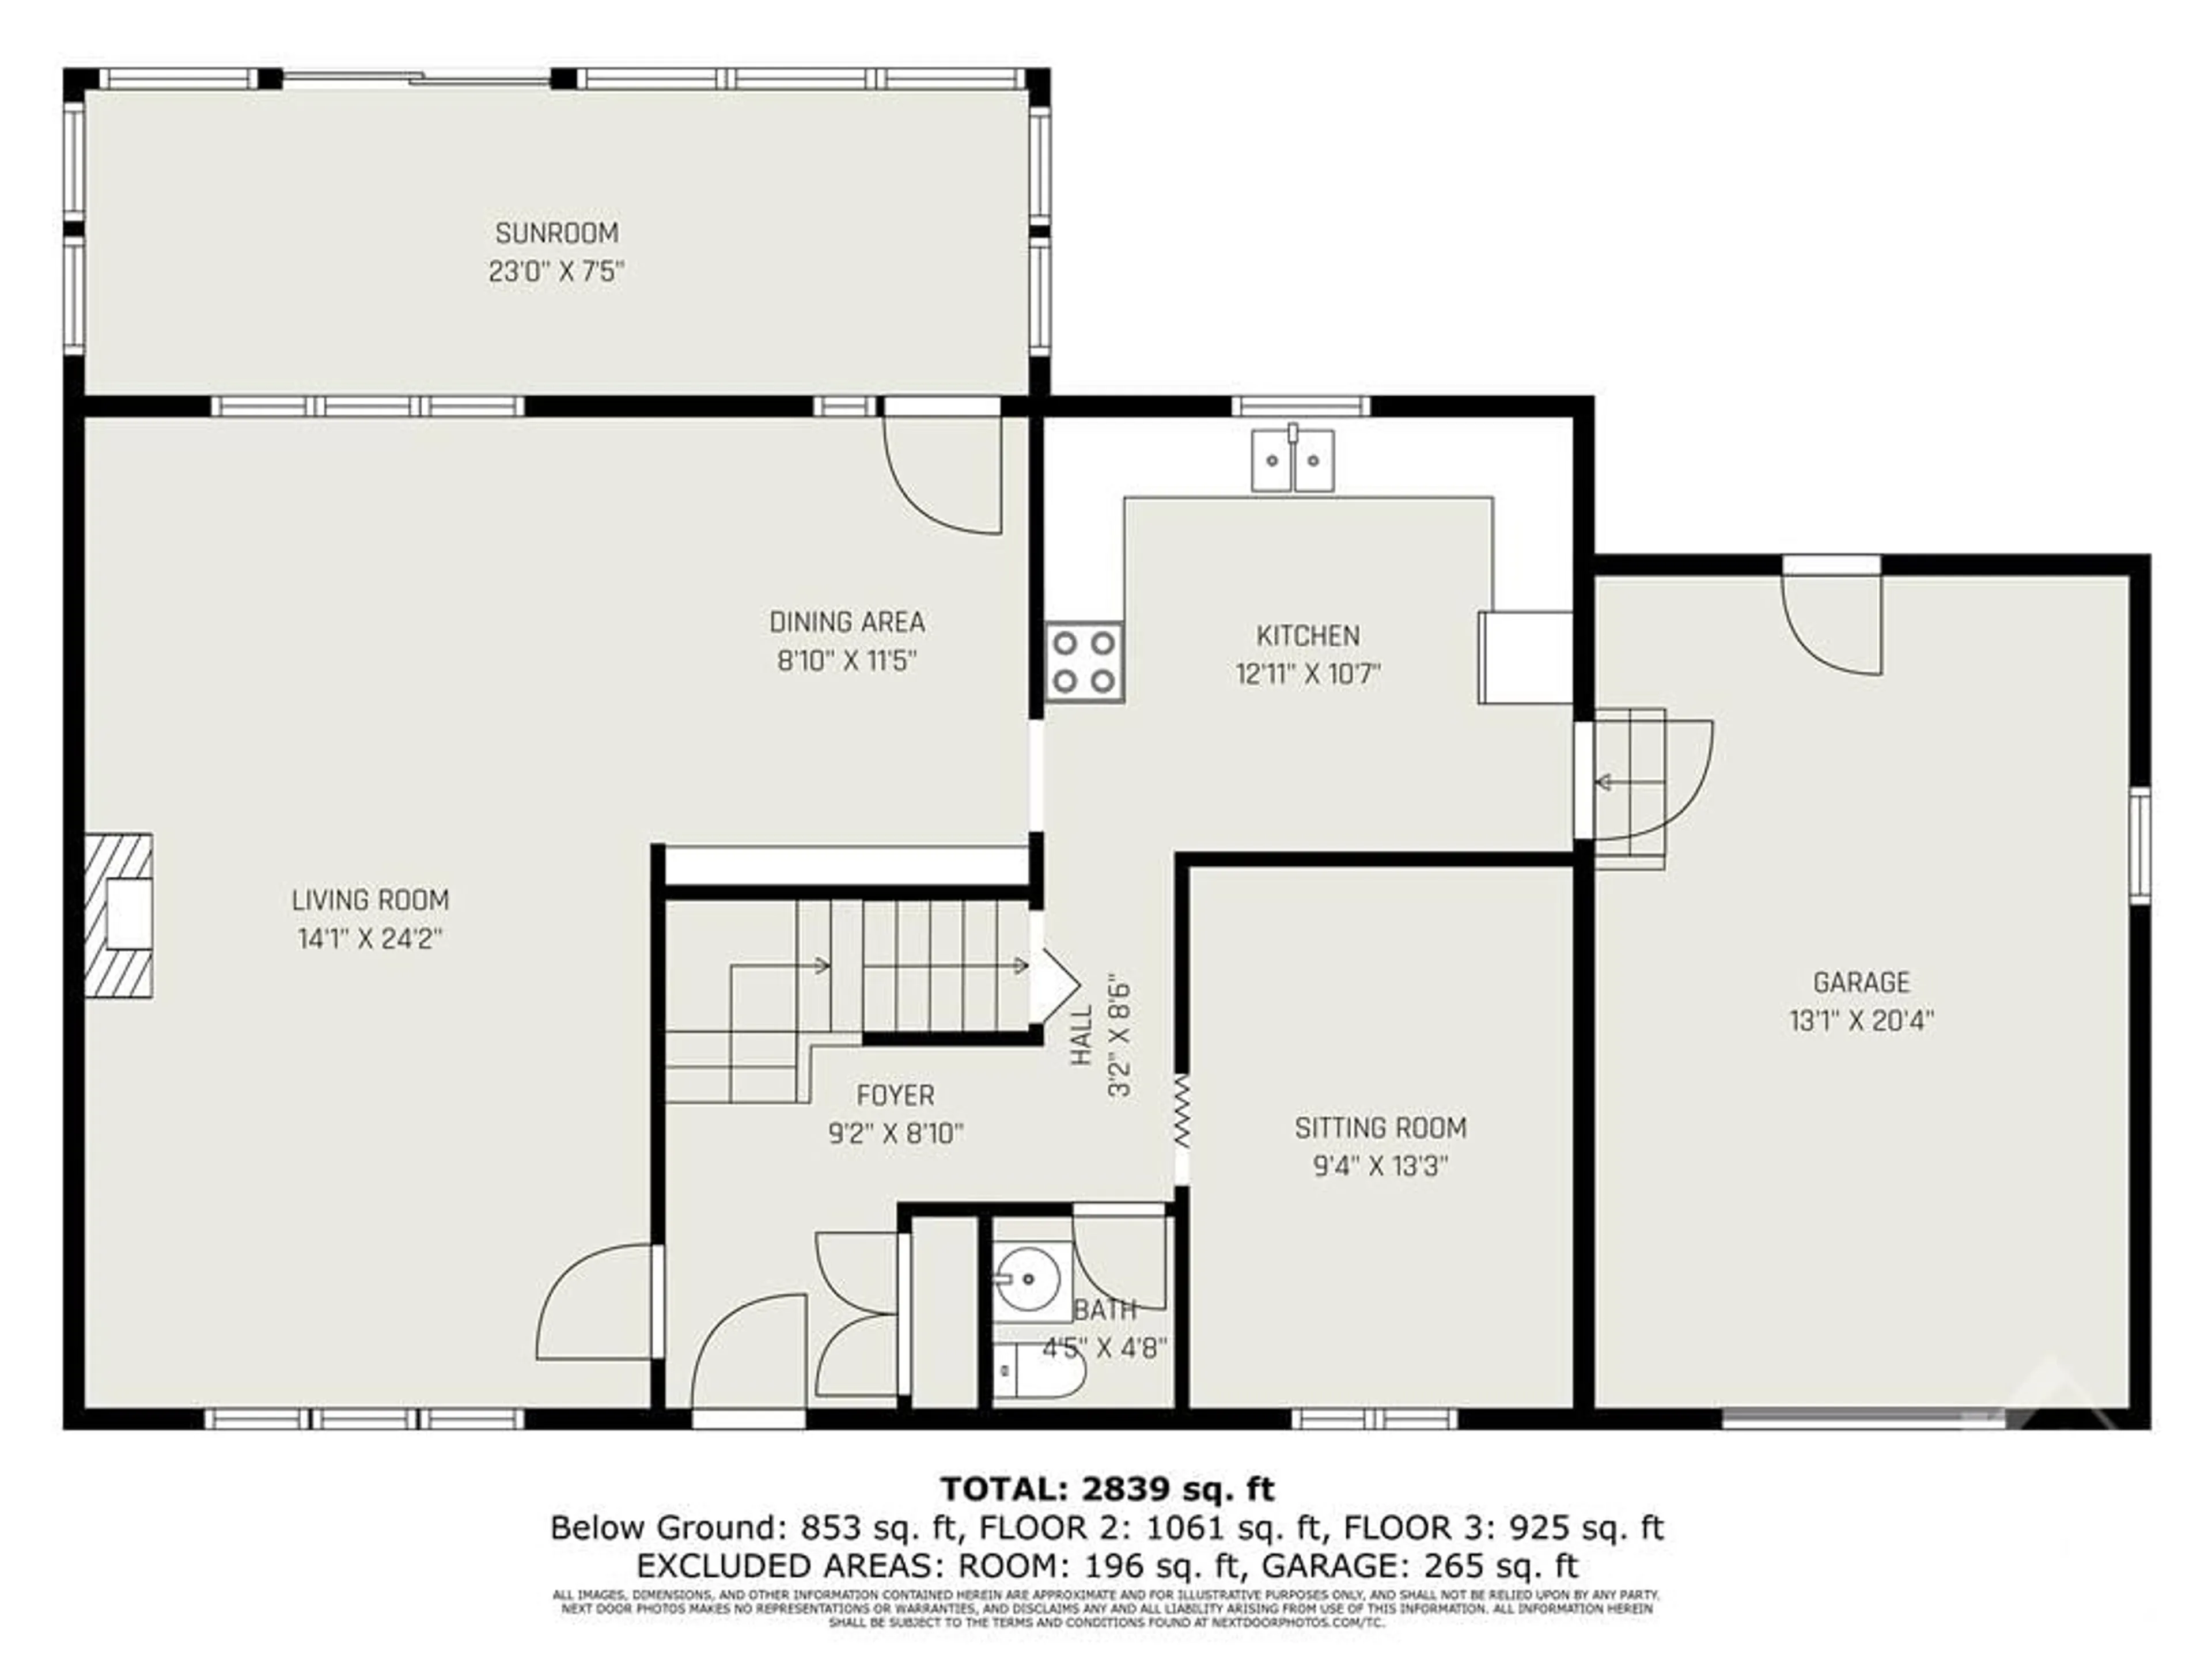 Floor plan for 999 HERITAGE Dr, Merrickville Ontario K0G 1N0